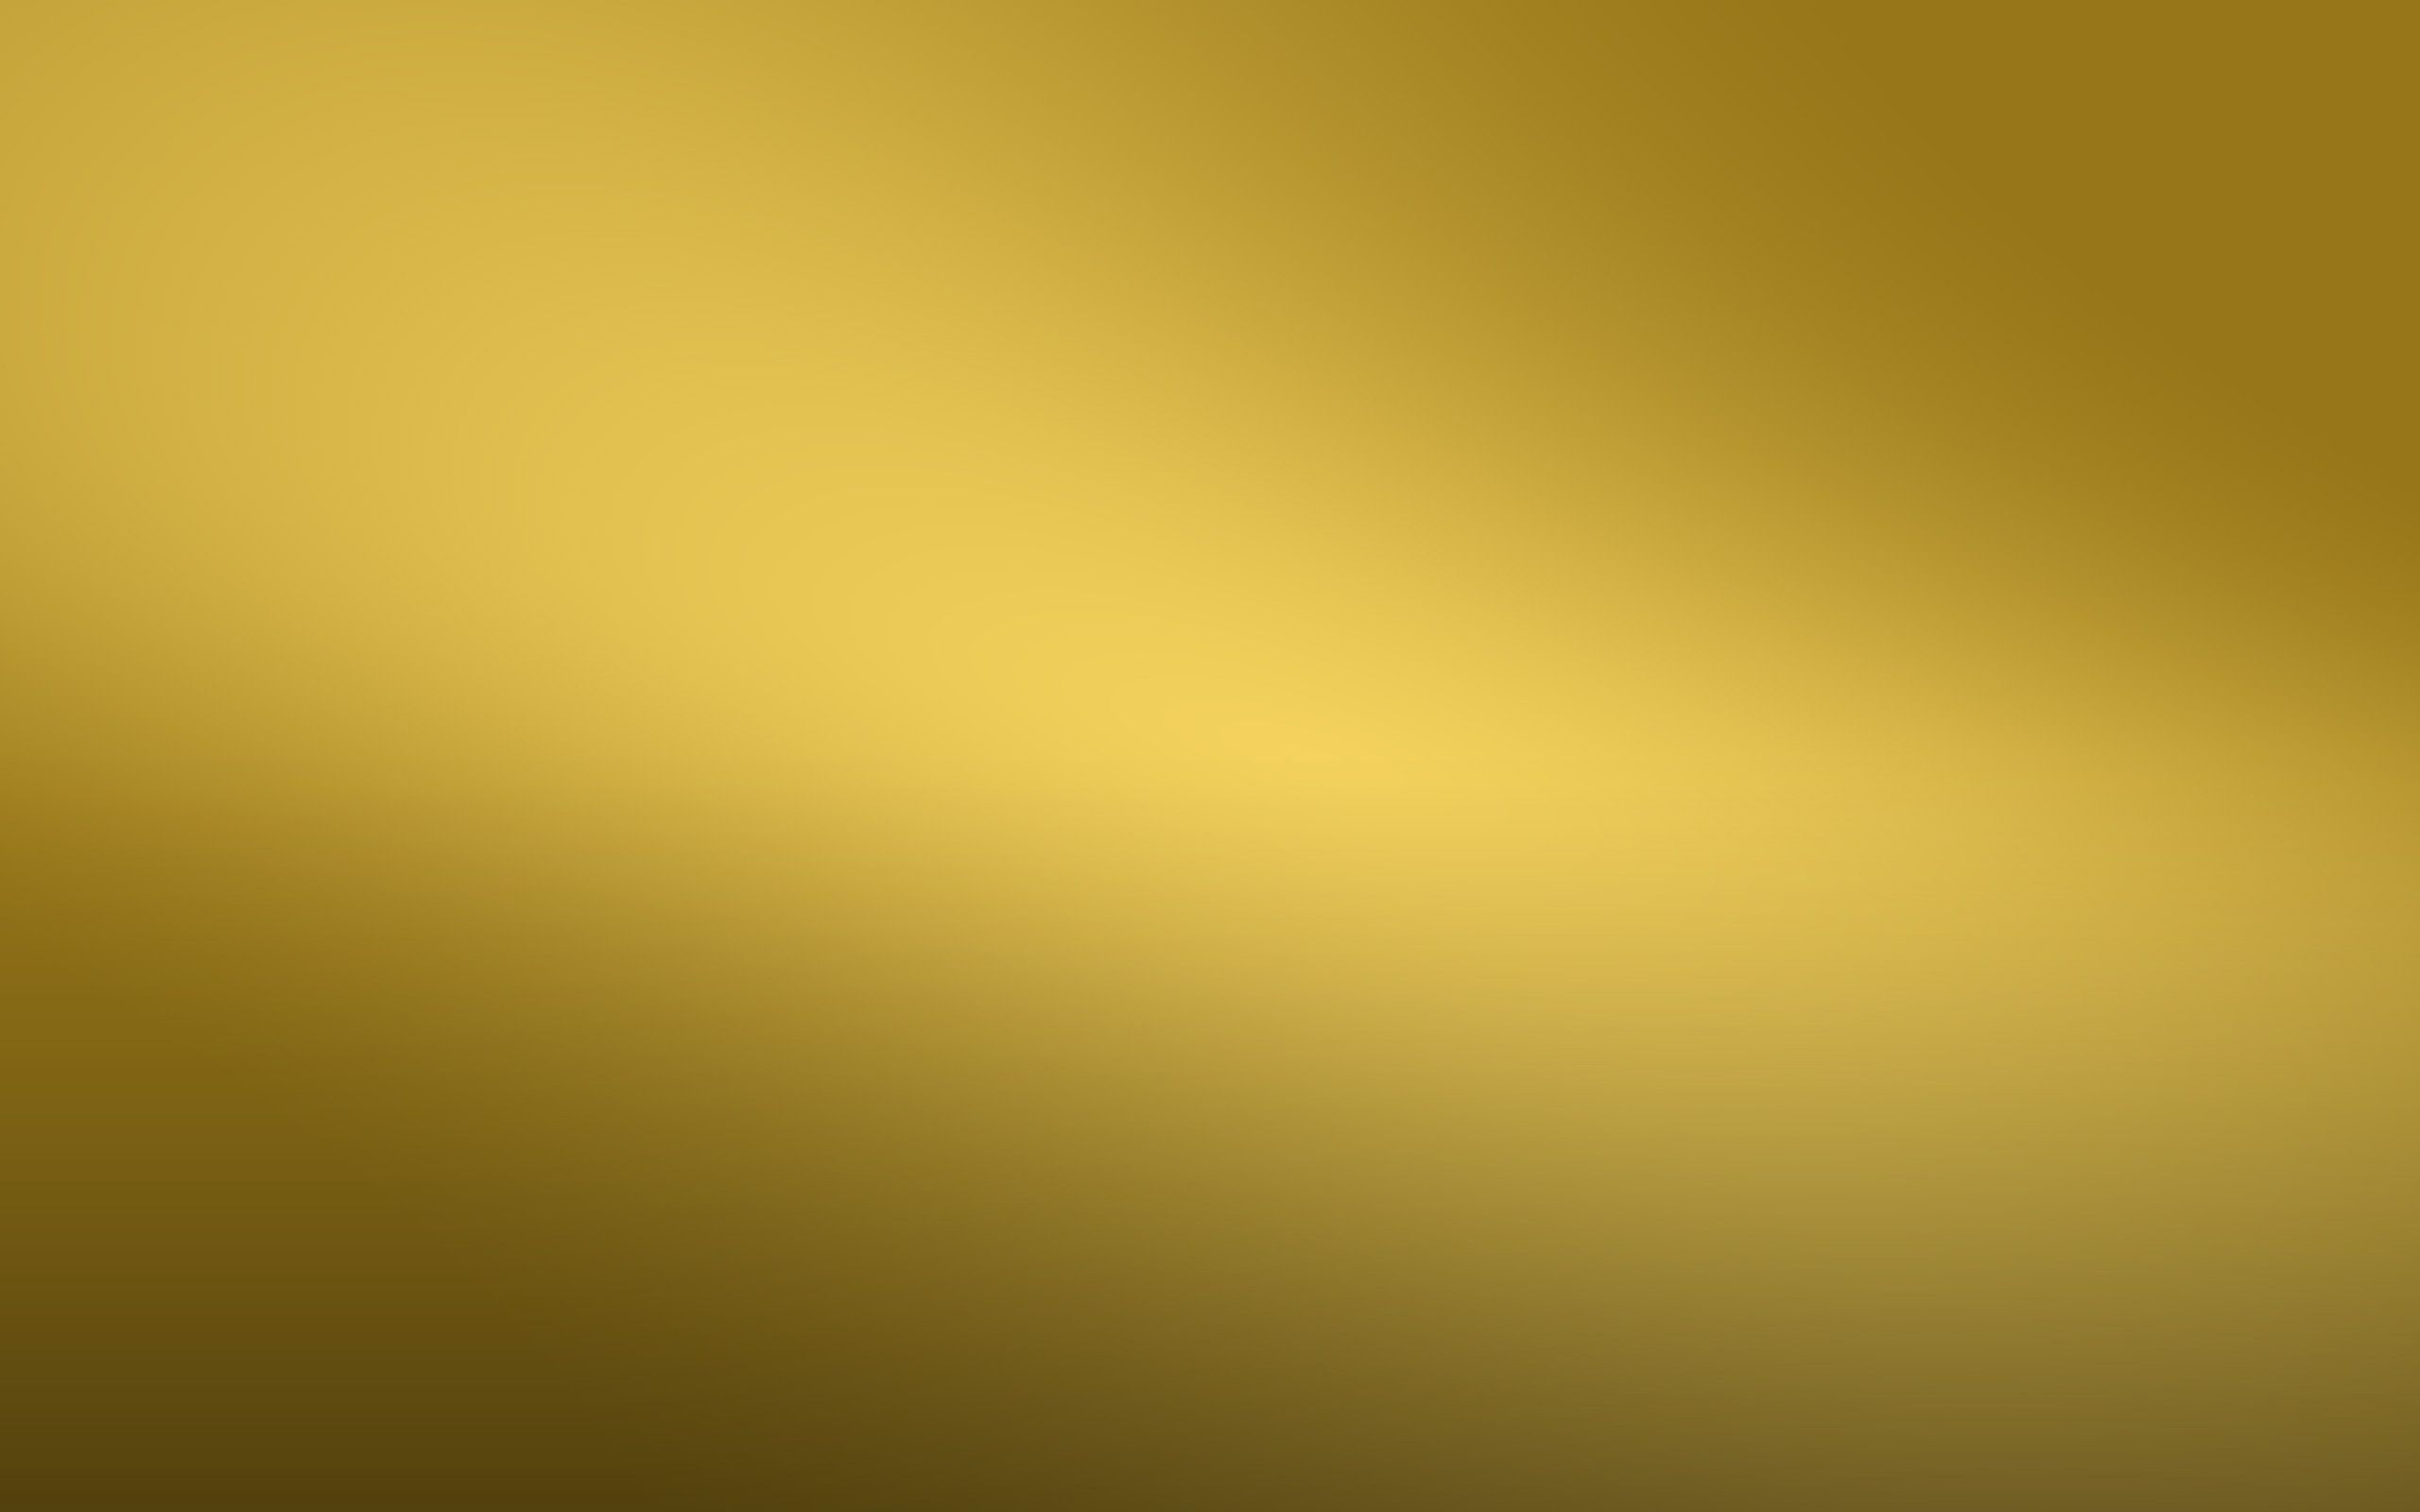 Hình nền vàng 24K: Nền vàng 24K thật đẹp, mang tới sự sang trọng cho điện thoại của bạn. Hãy ngắm nhìn và cảm nhận!